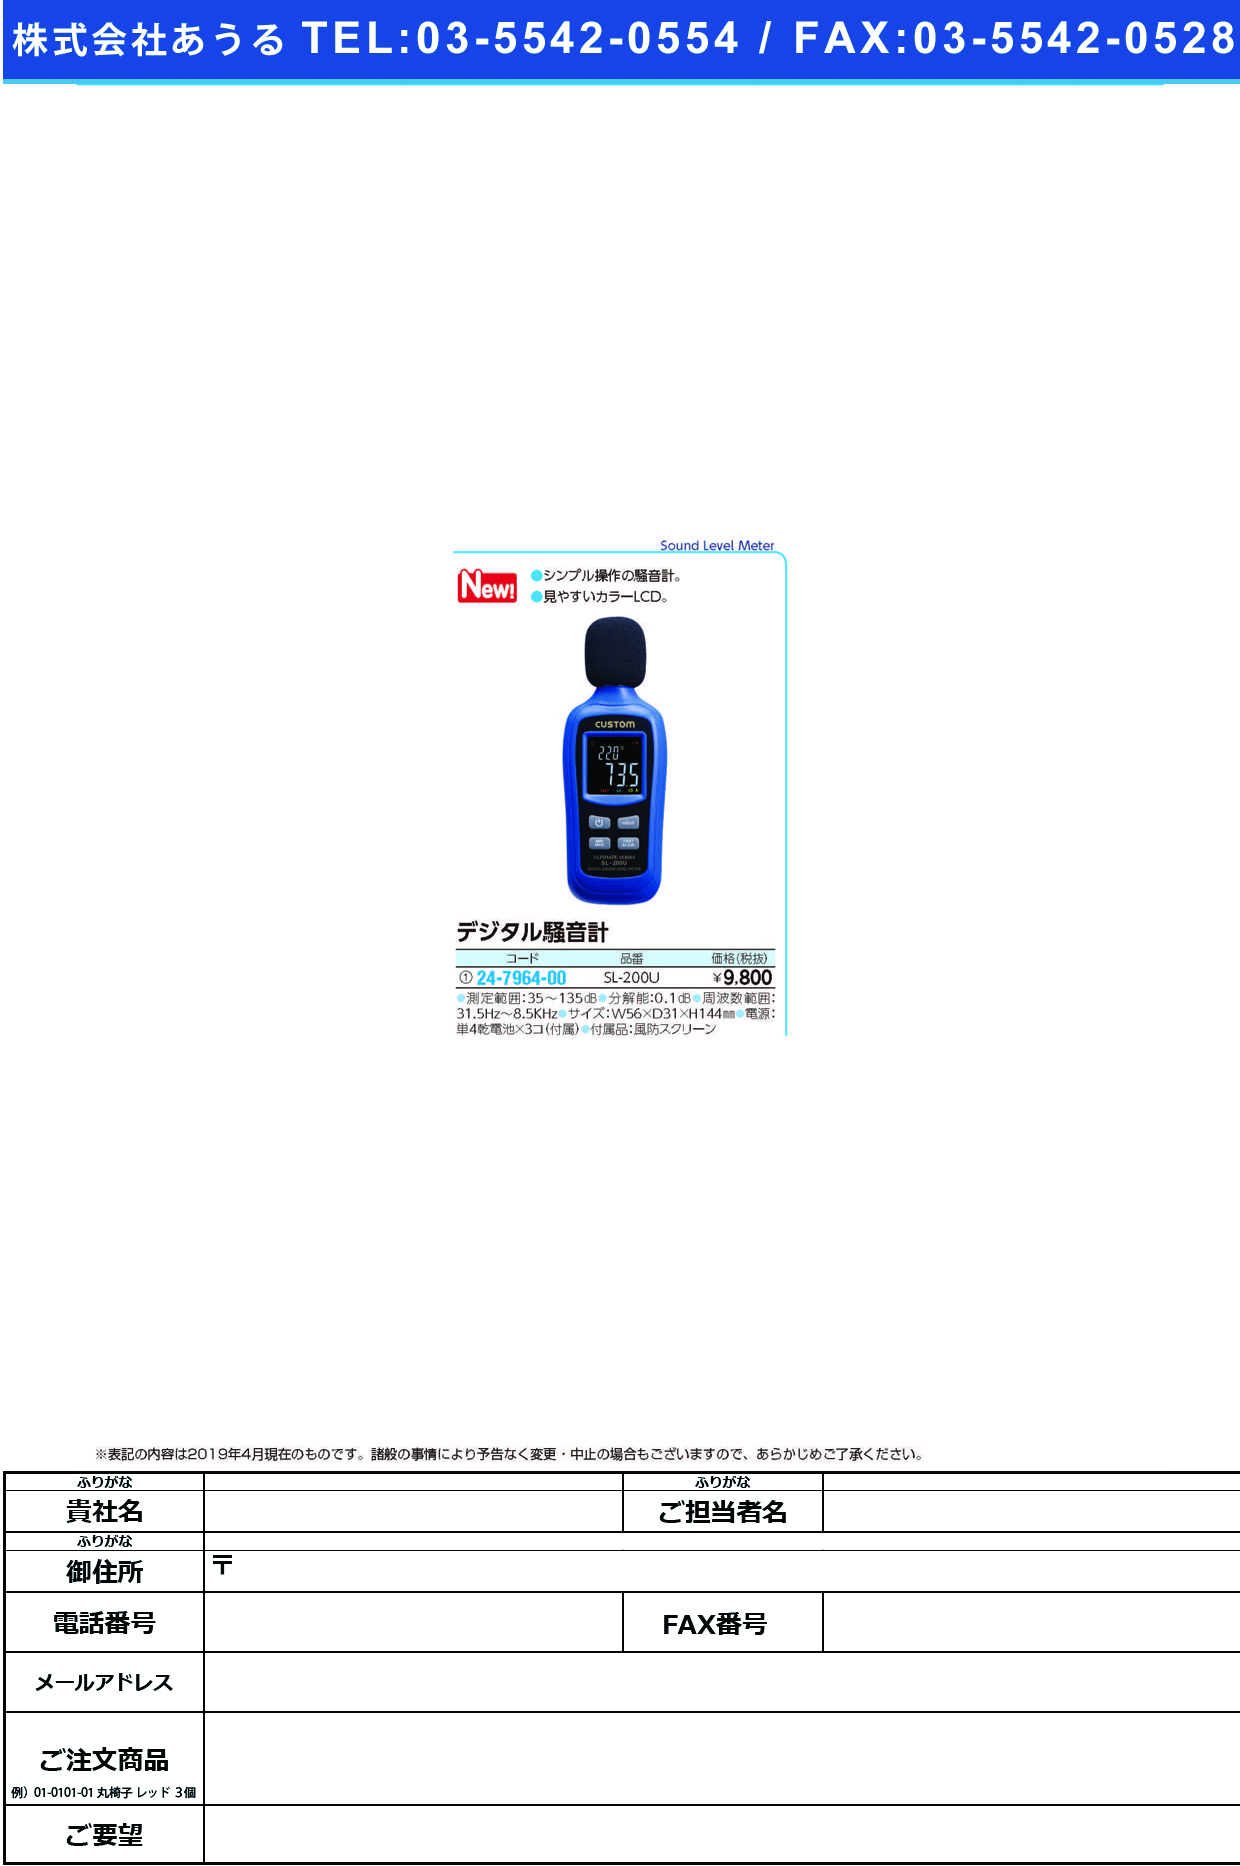 (24-7964-00)デジタル騒音計SL-200U ﾃﾞｼﾞﾀﾙｿｳｵﾝｹｲ(カスタム)【1台単位】【2019年カタログ商品】